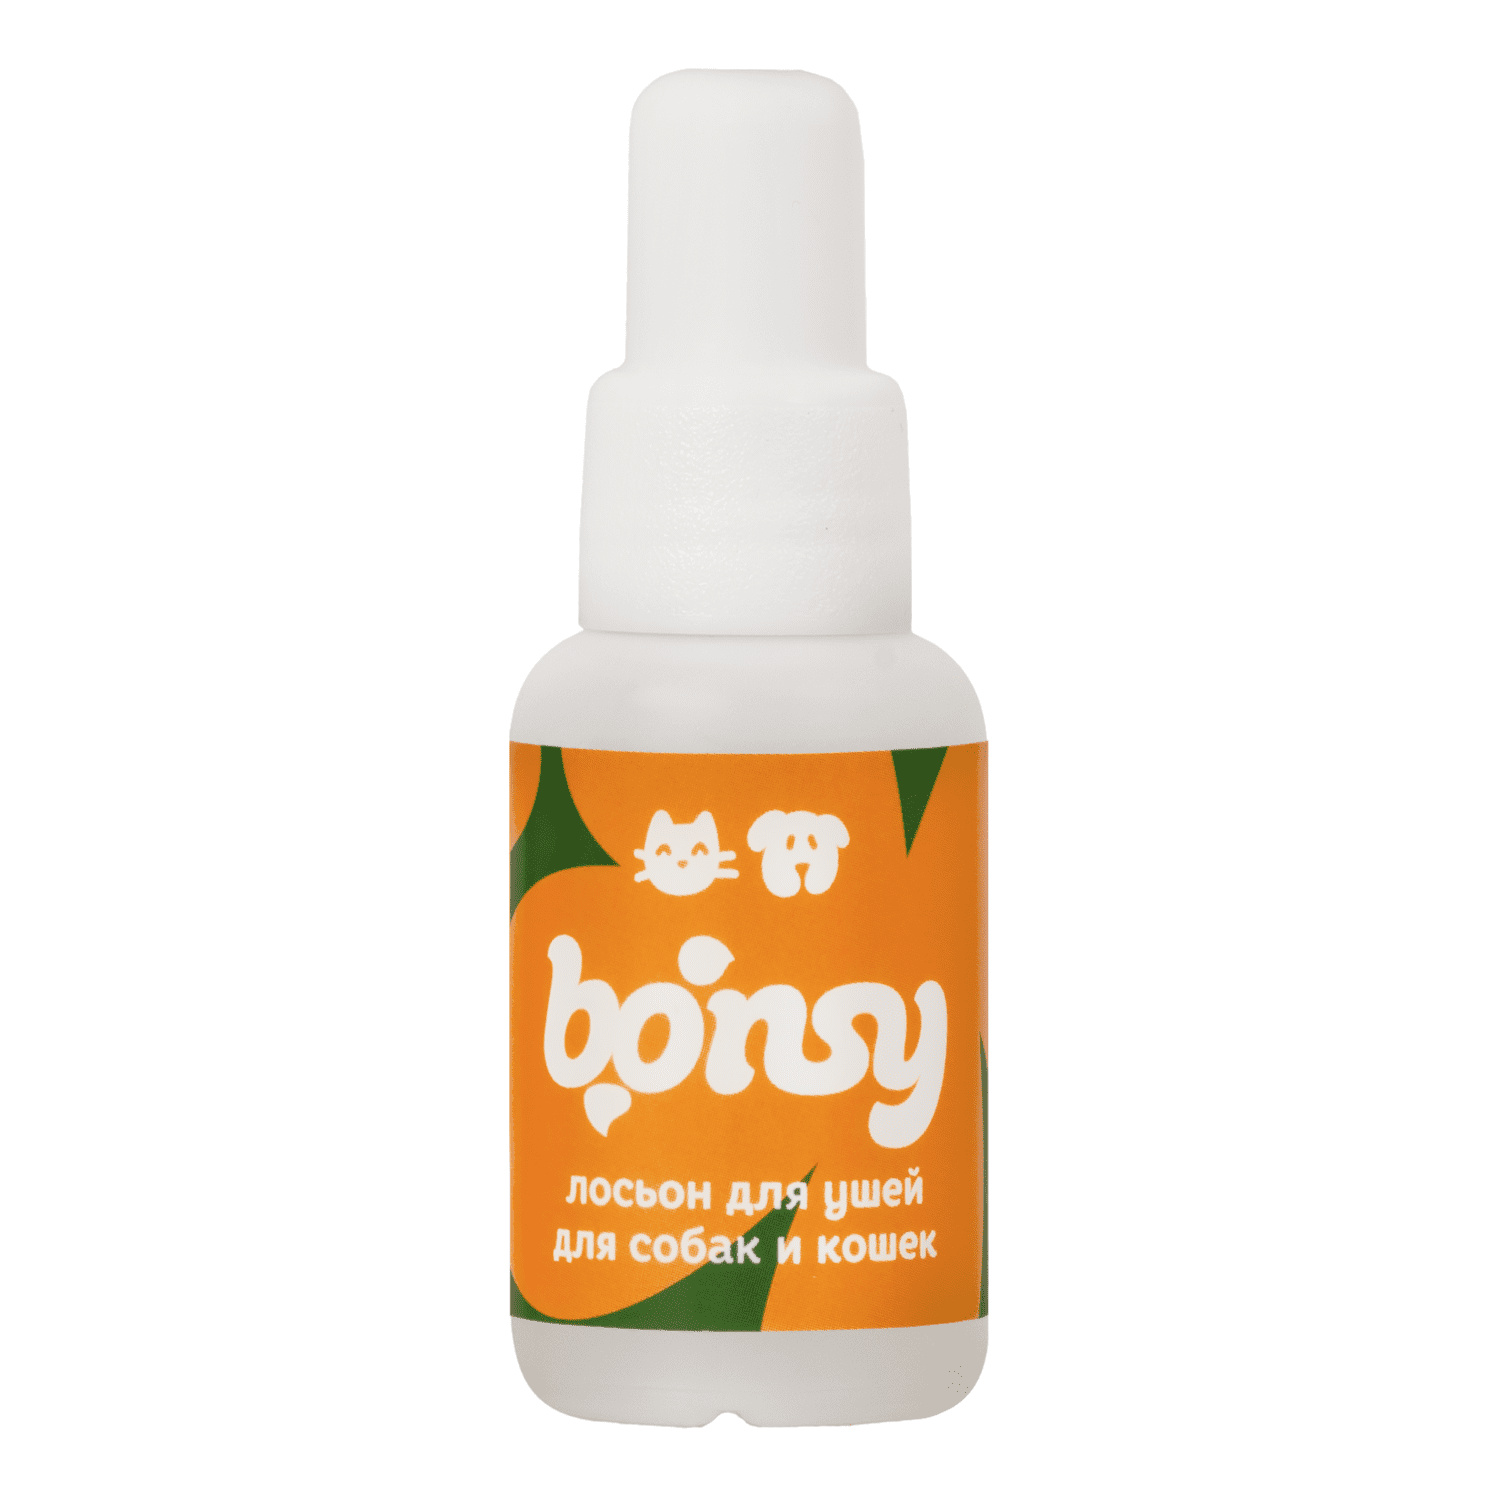 Bonsy Bonsy лосьон для очистки ушей кошек и собак (30 г) bonsy bonsy шампунь с хлоргексидином для профилактики кожных заболеваний у собак и кошек 250 г